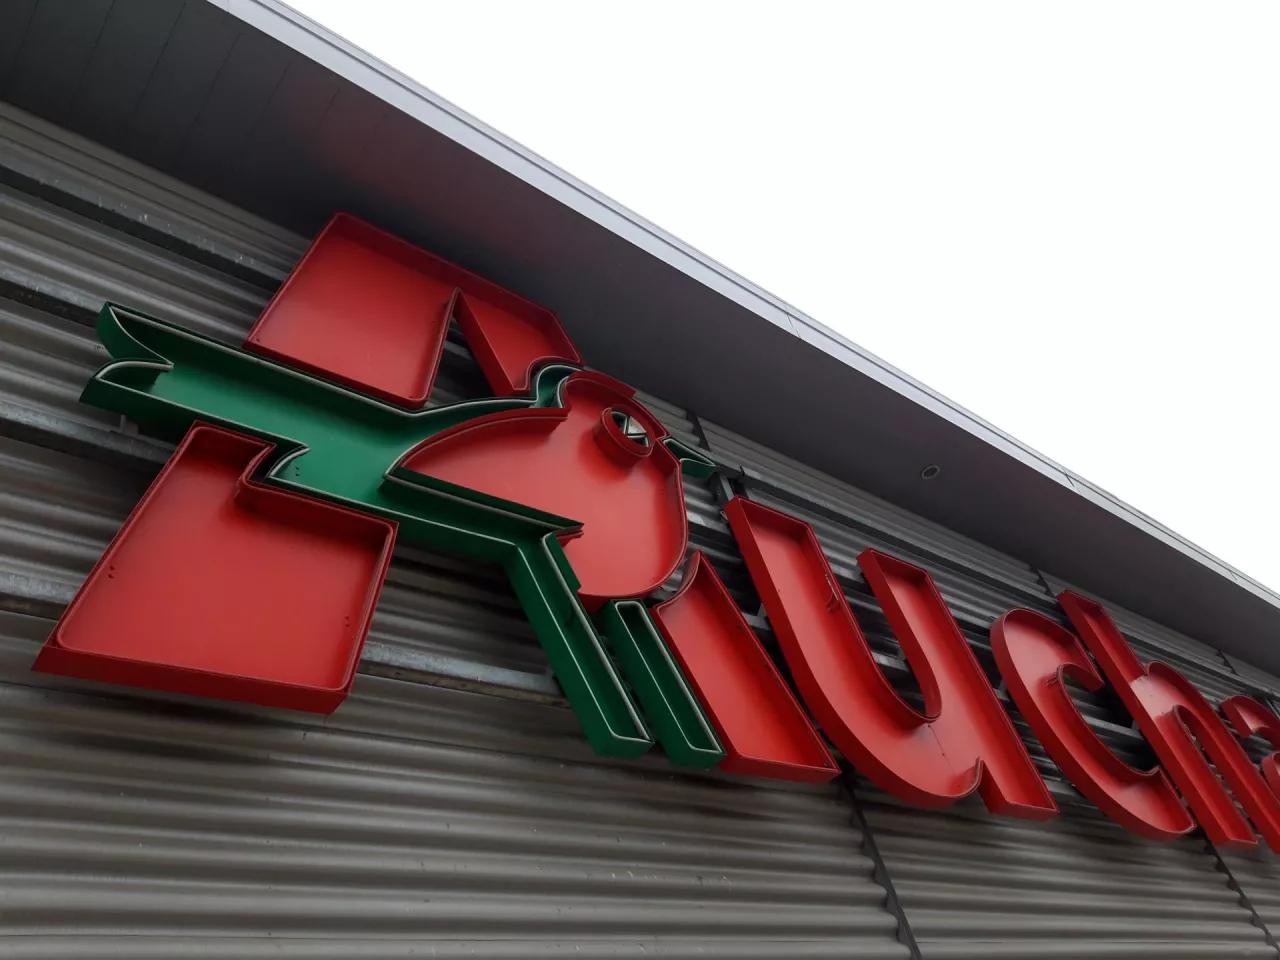 Hipermarket Auchan w Markach pod Warszawą (wiadomoscihandlowe.pl)